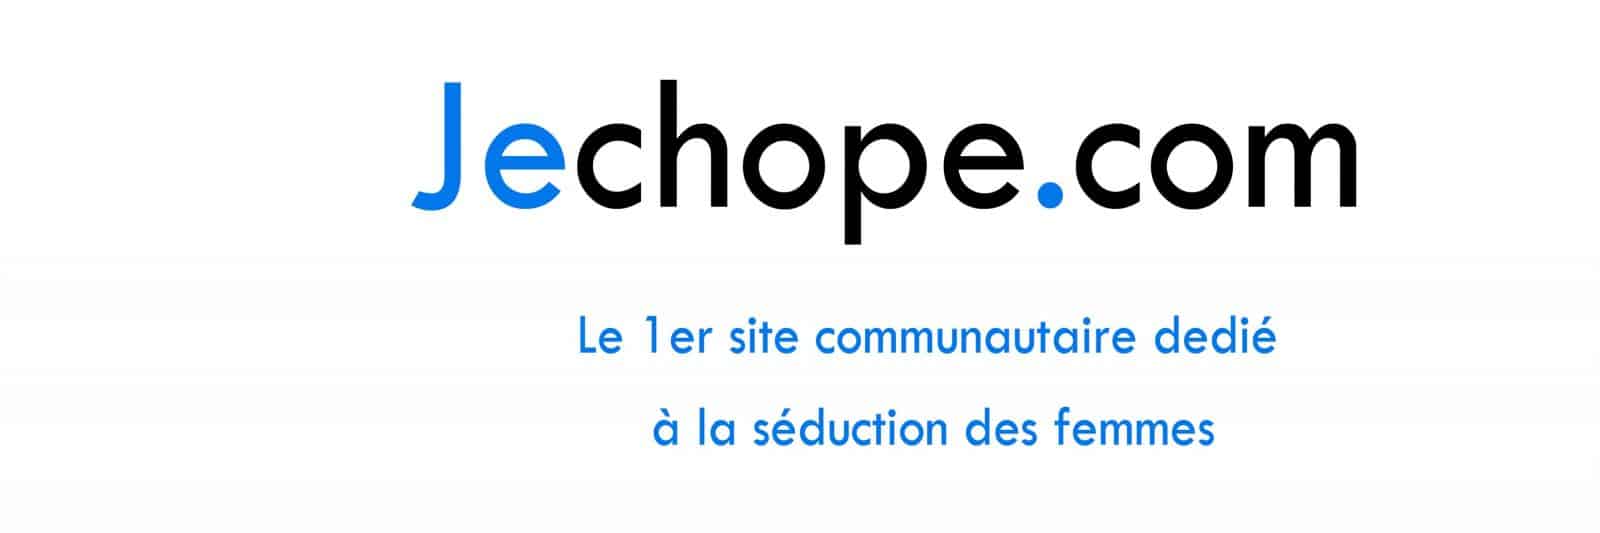 jechope.com choper à paris